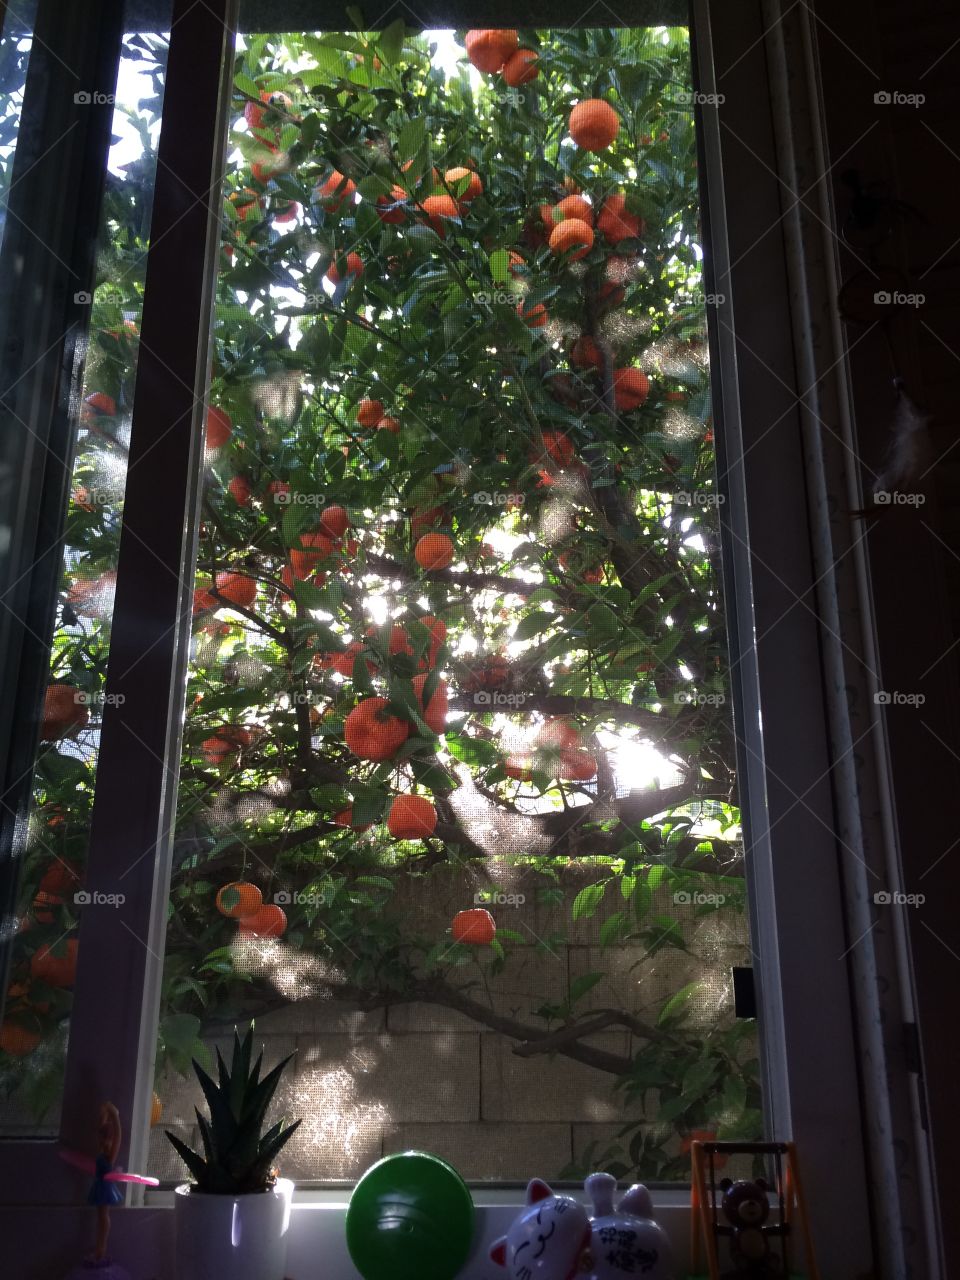 orange tree outside my bedroom window